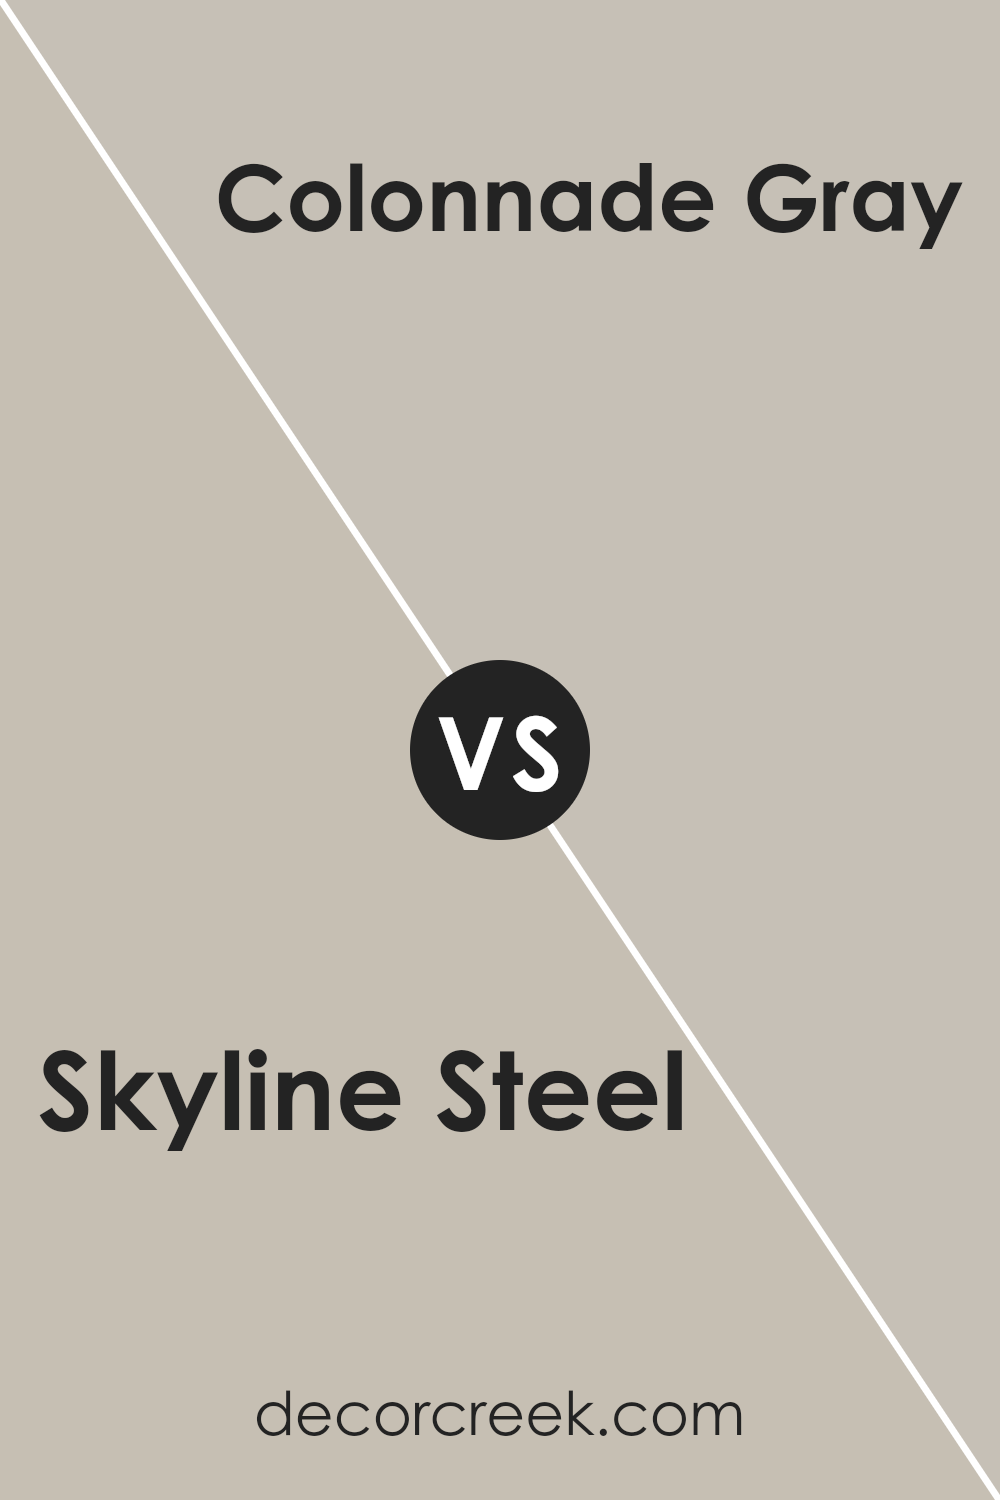 skyline_steel_sw_1015_vs_colonnade_gray_sw_7641